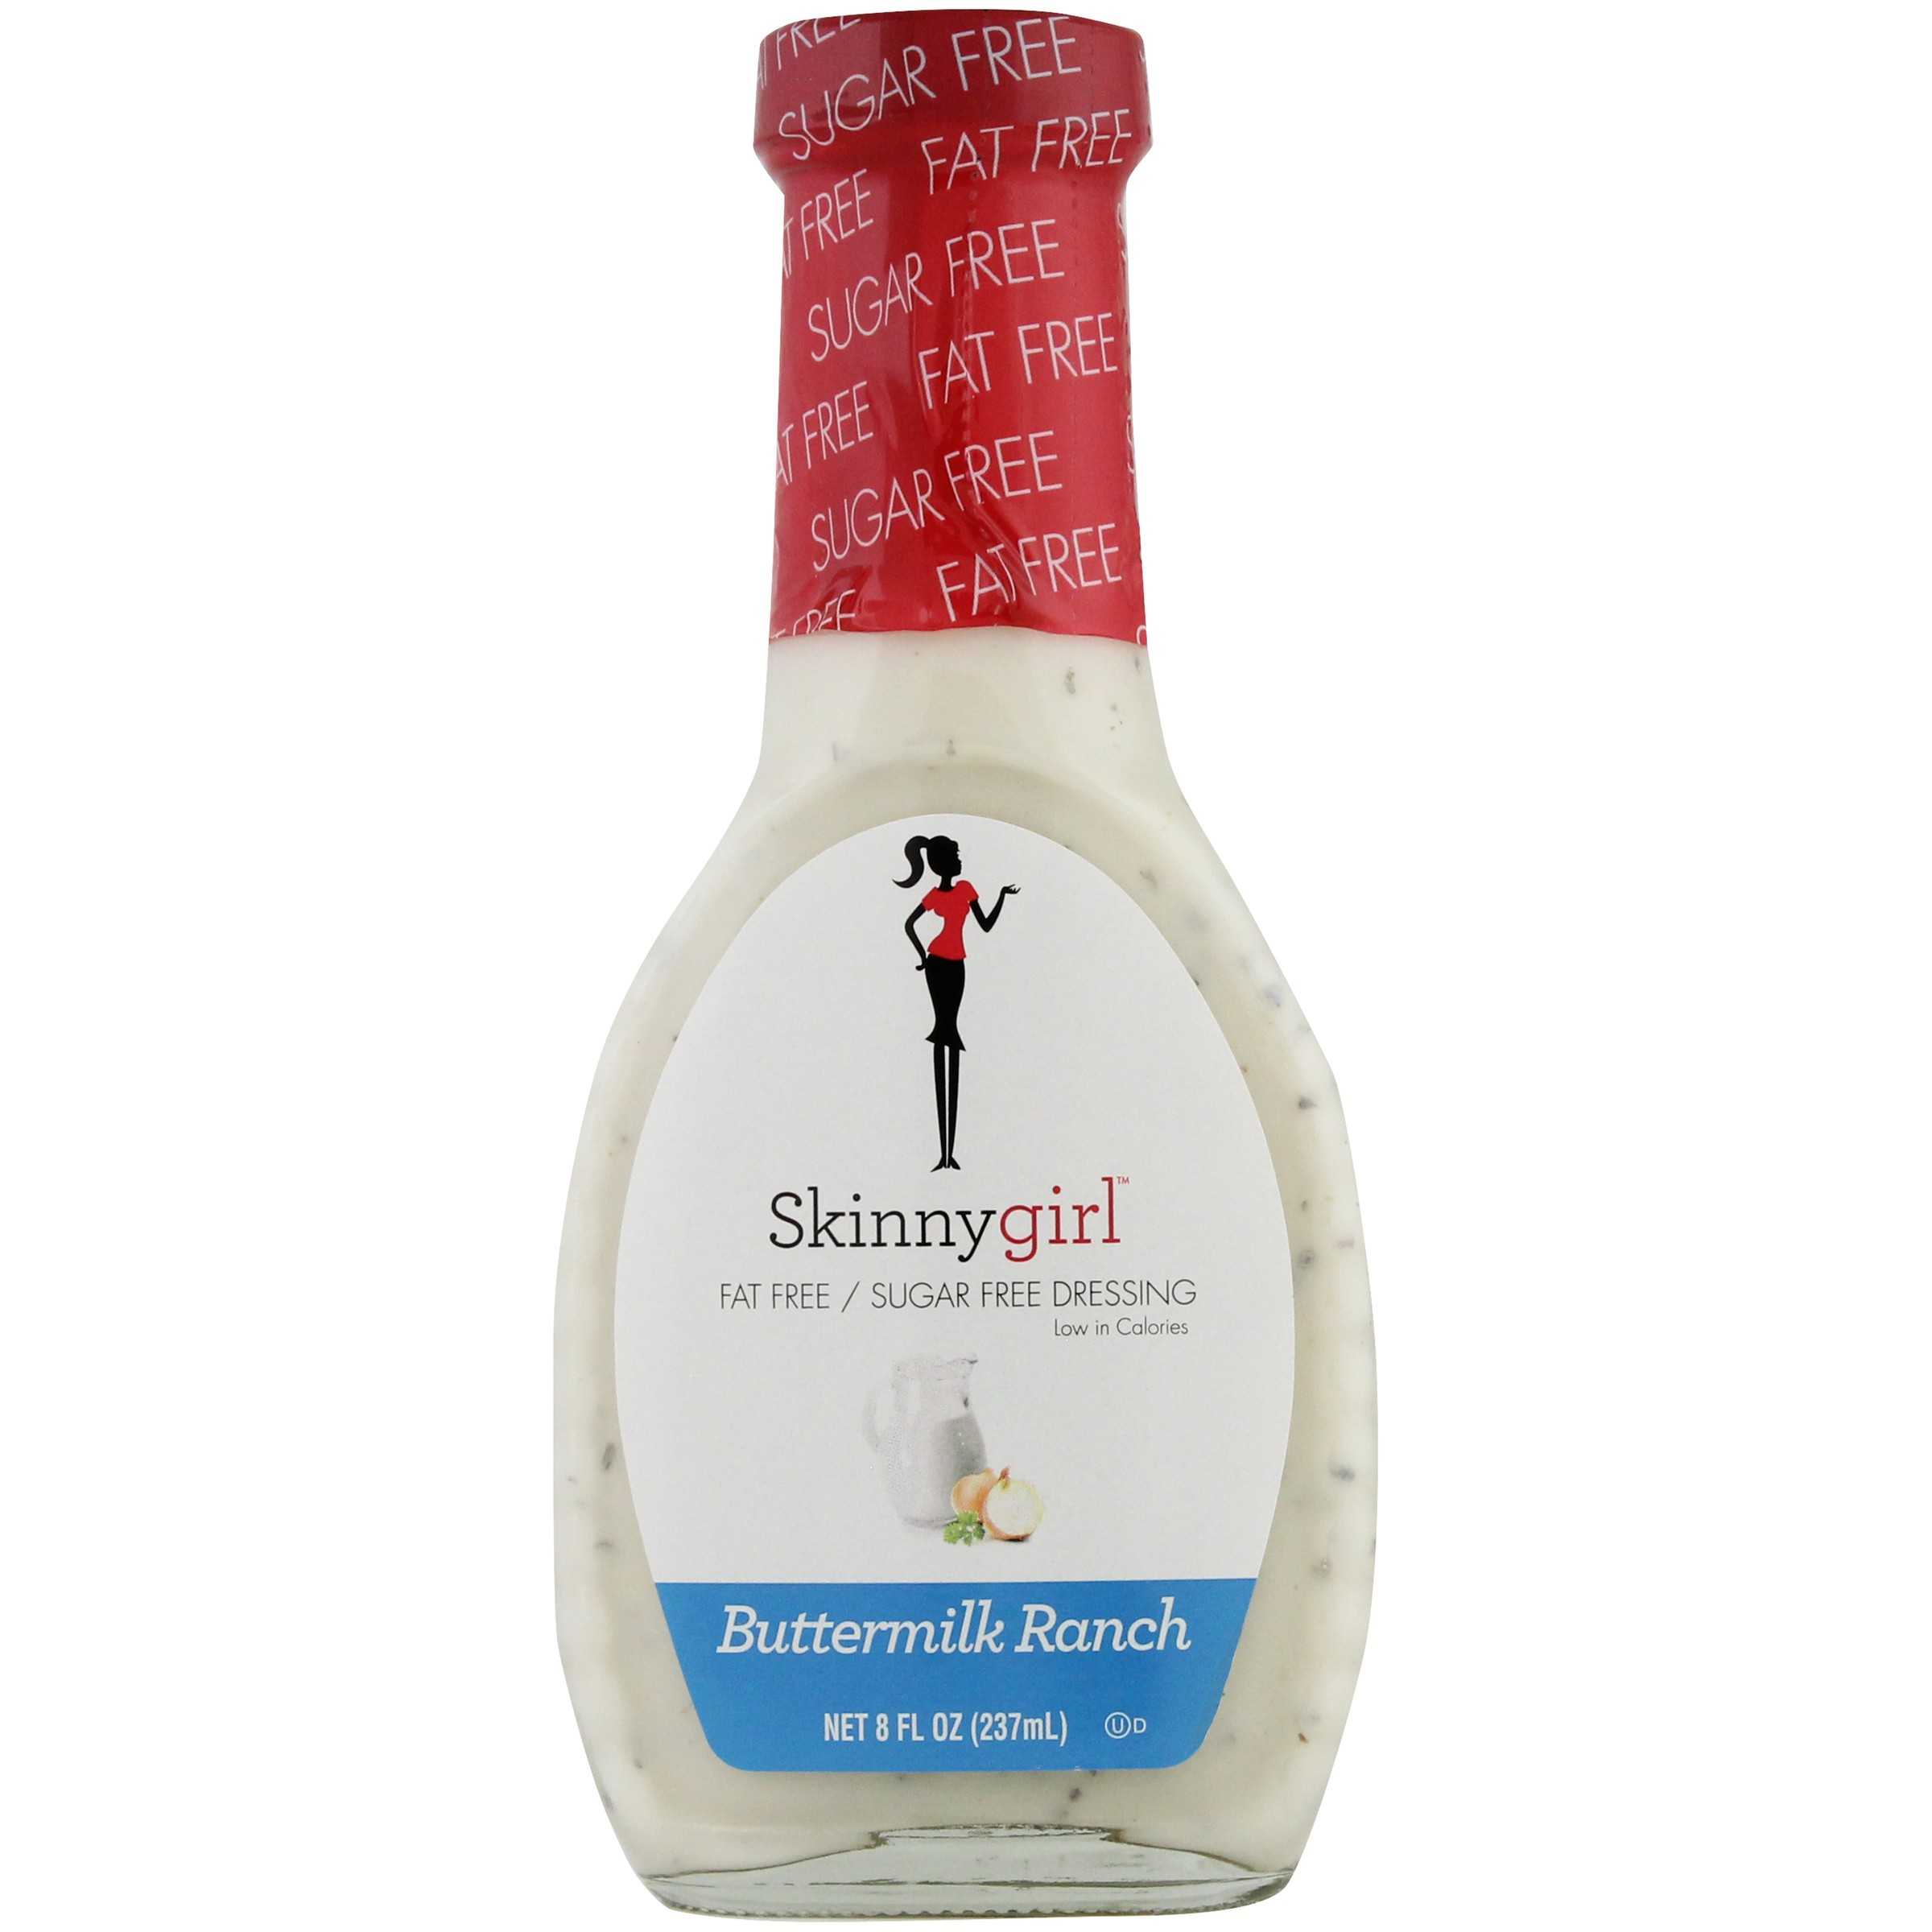 Skinnygirl™ Buttermilk Ranch Fat Free/Sugar Free Salad Dressing 8 fl. oz. Bottle